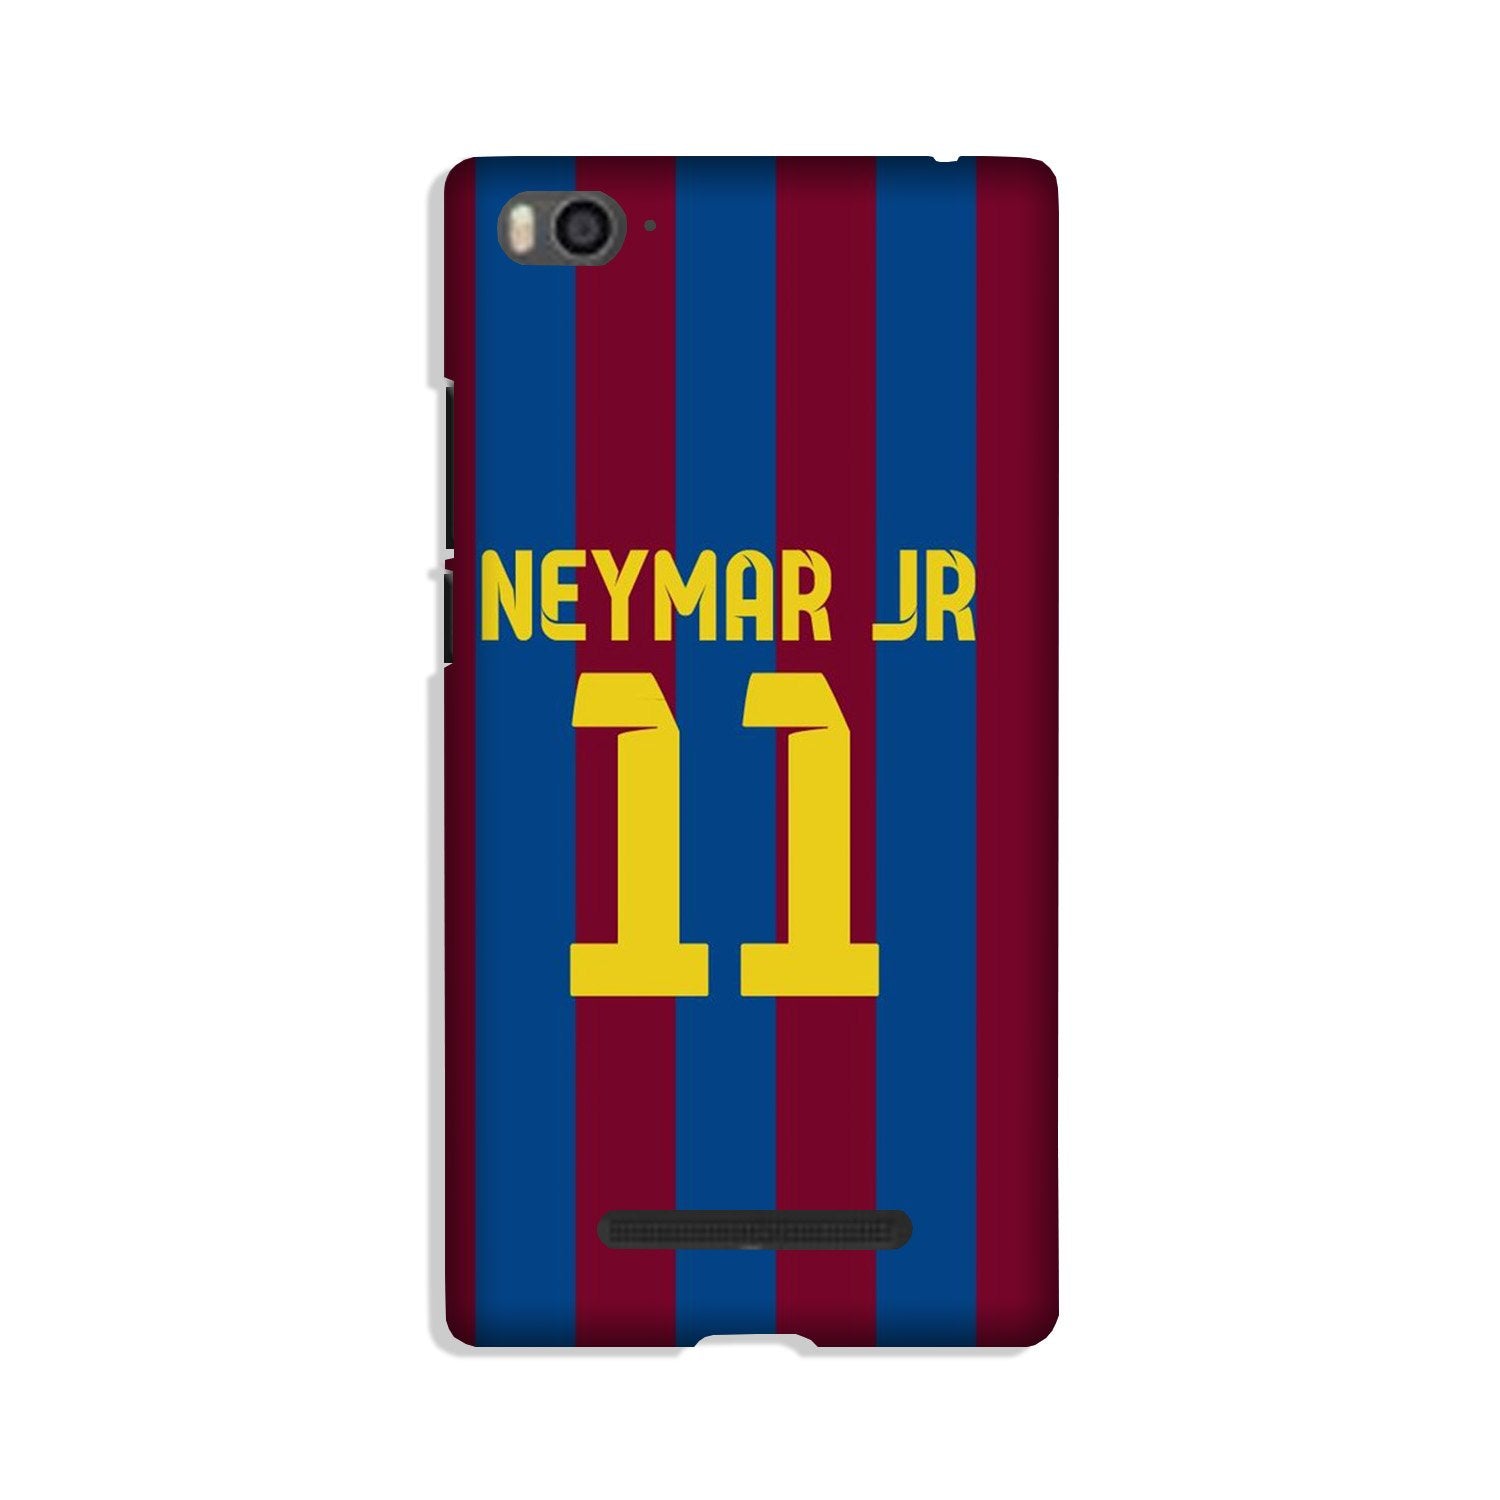 Neymar Jr Case for Redmi 4A  (Design - 162)